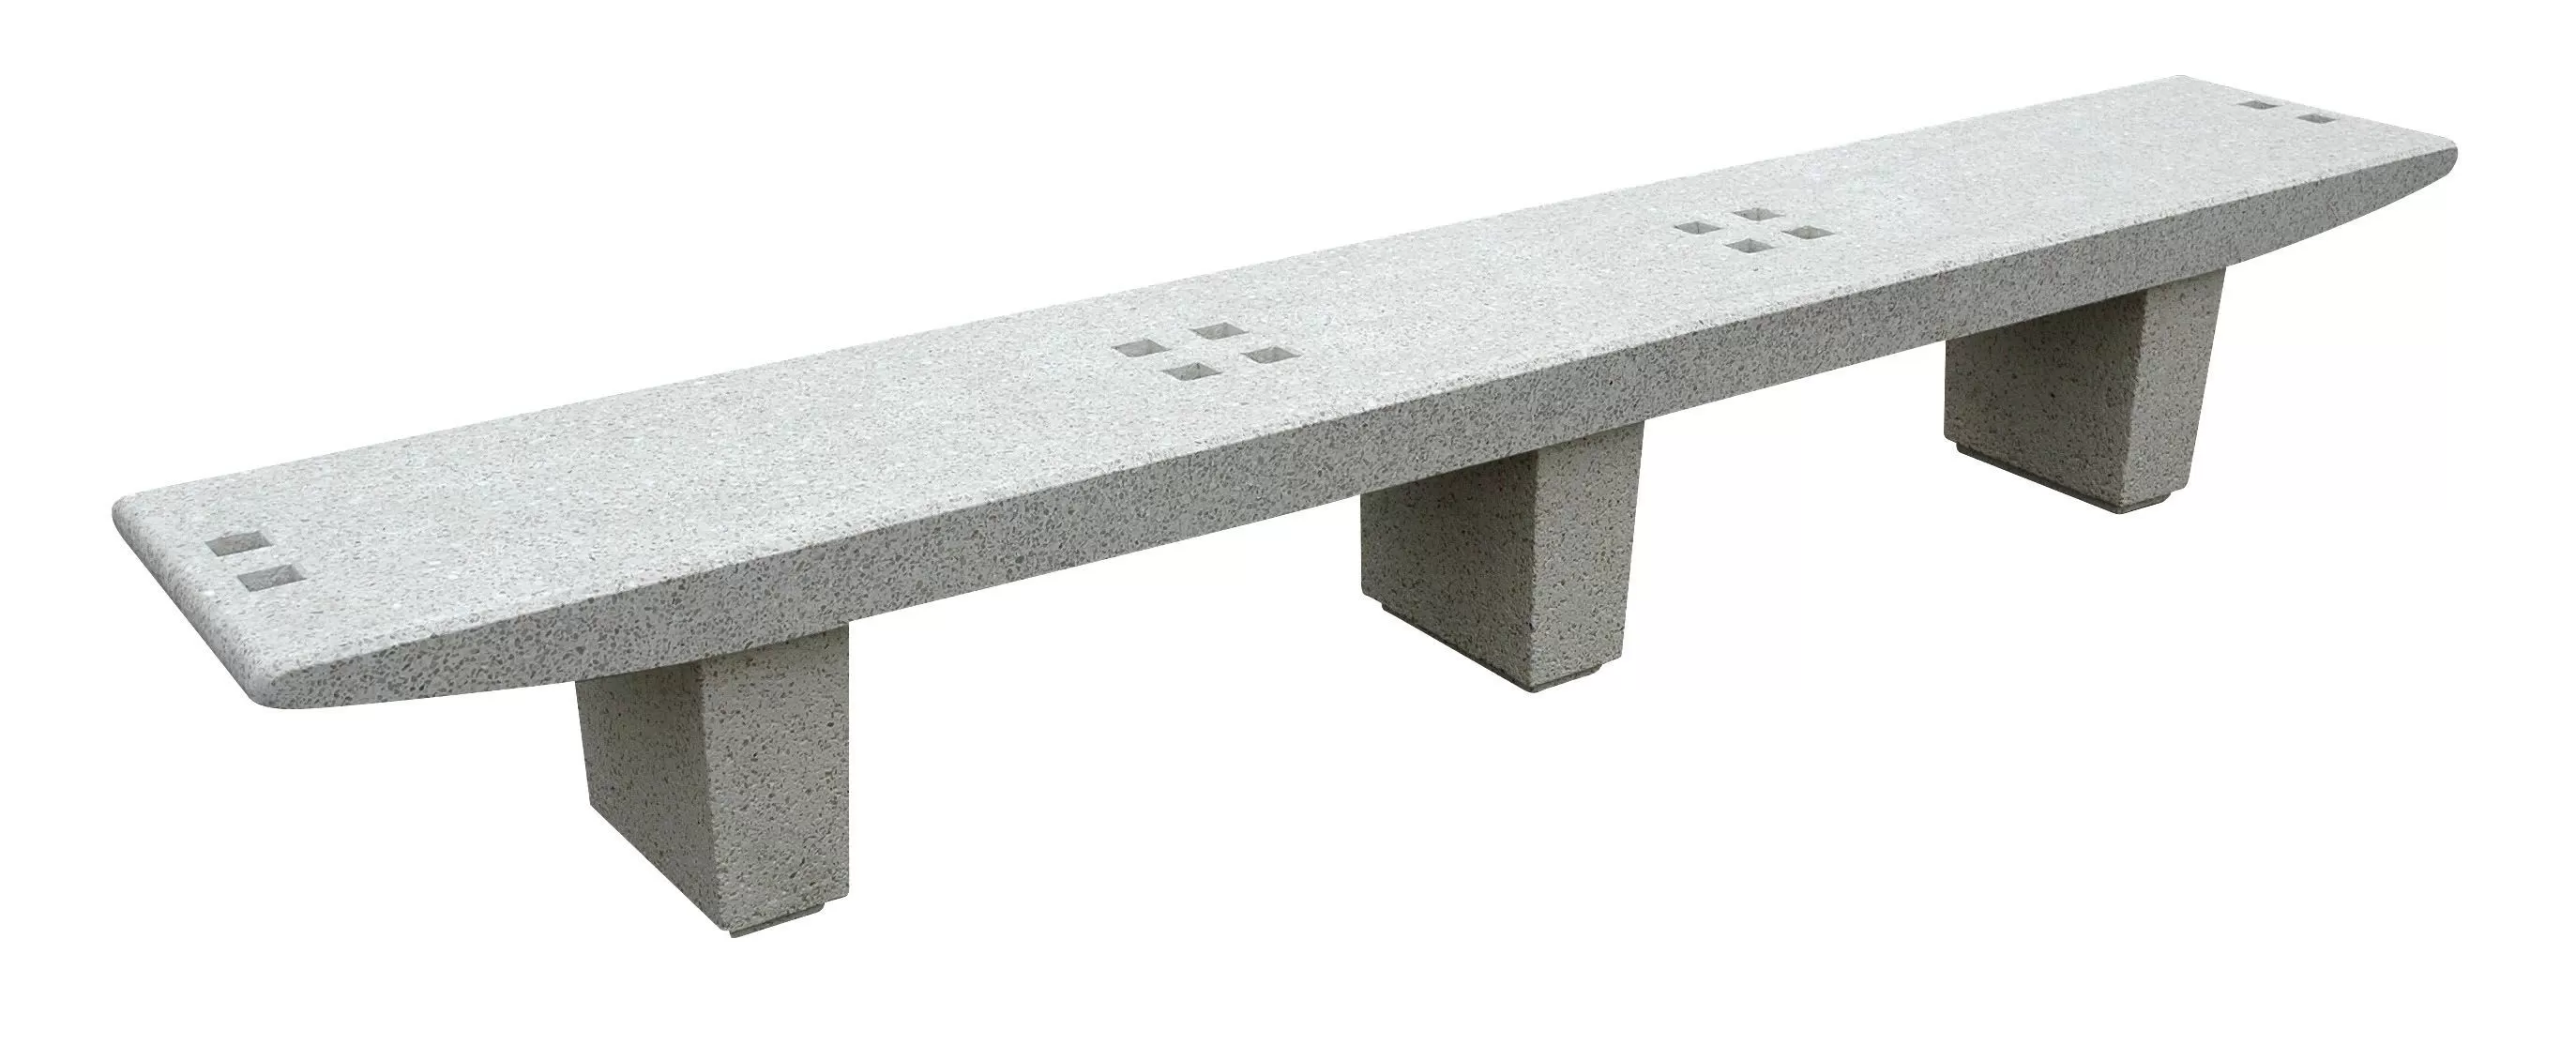 Simple concrete bench